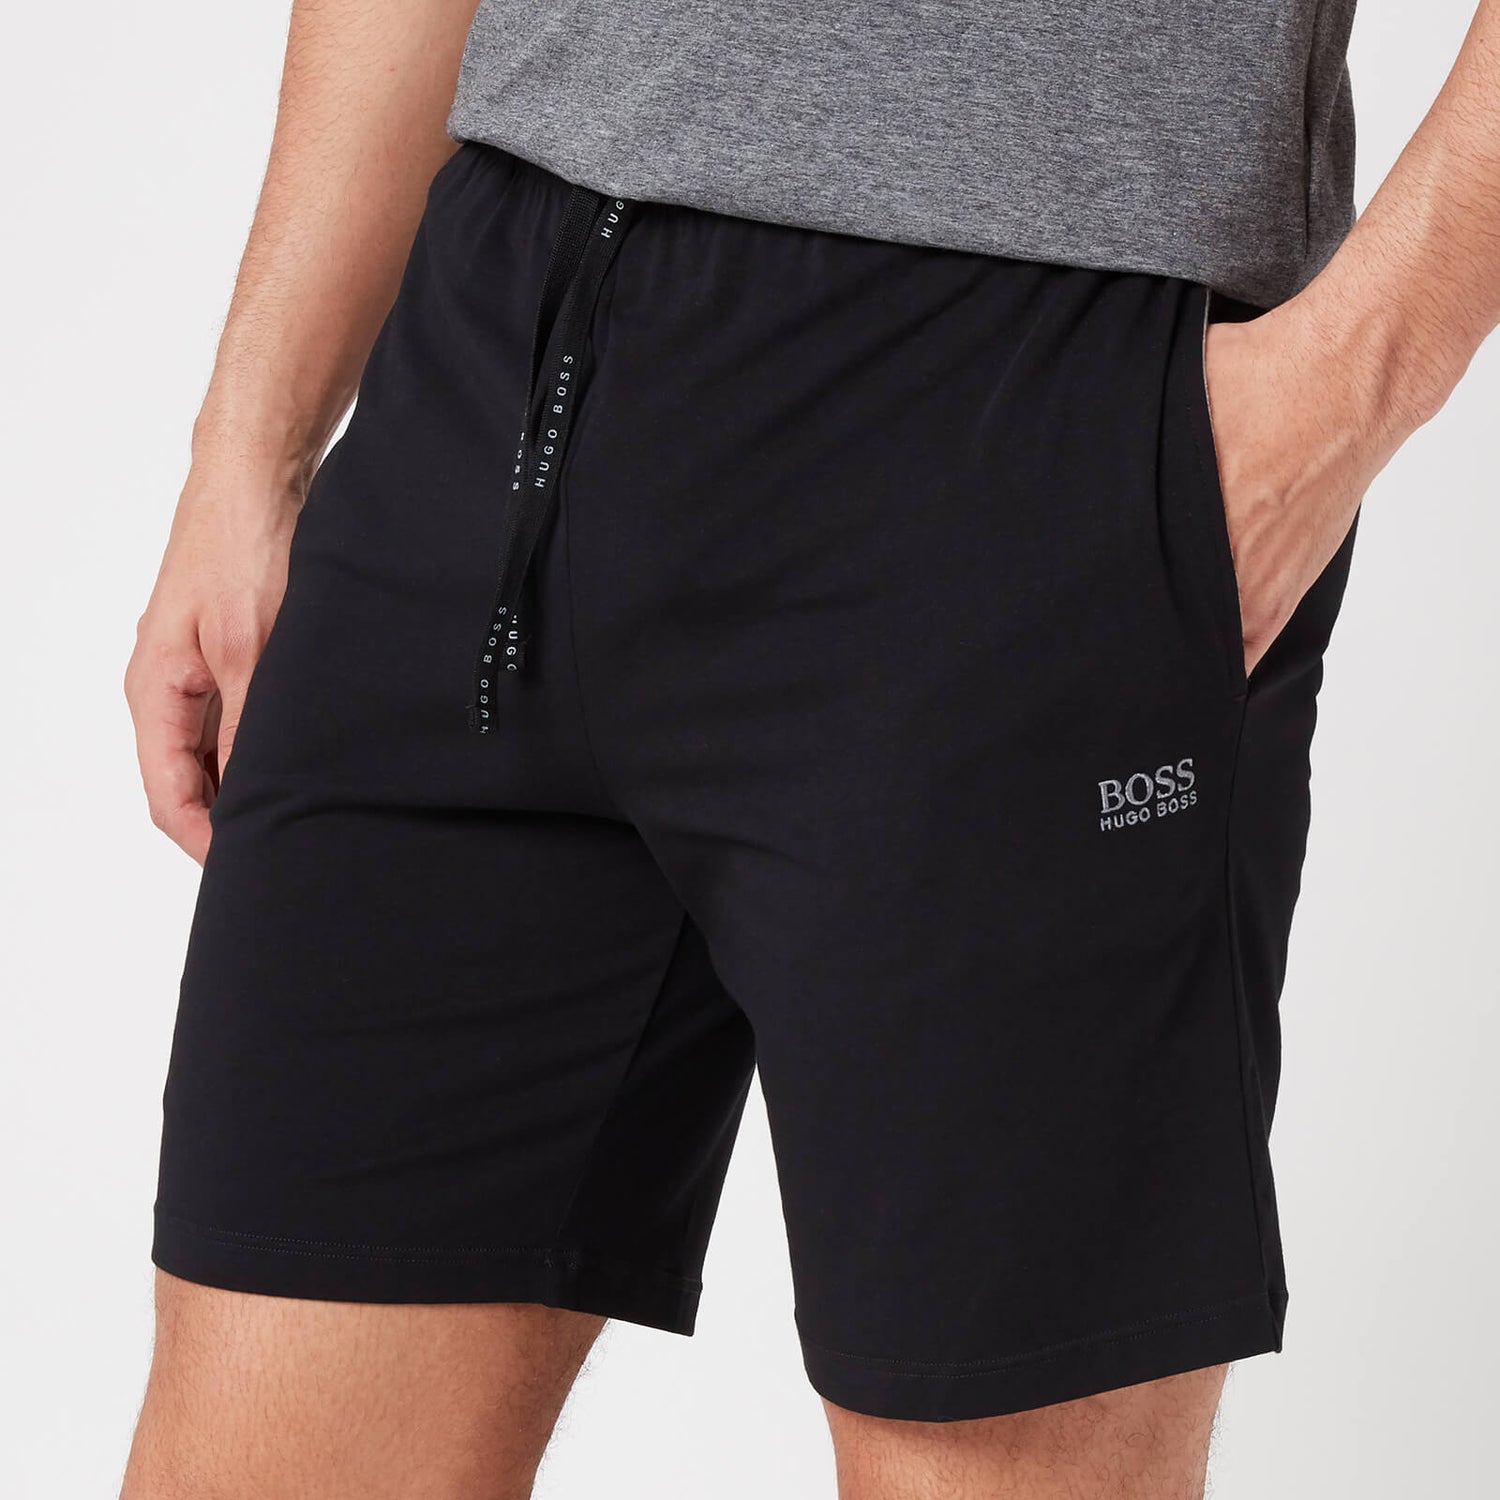 BOSS Loungewear Men's Mix&Match Shorts with Contrast Waistband - Black